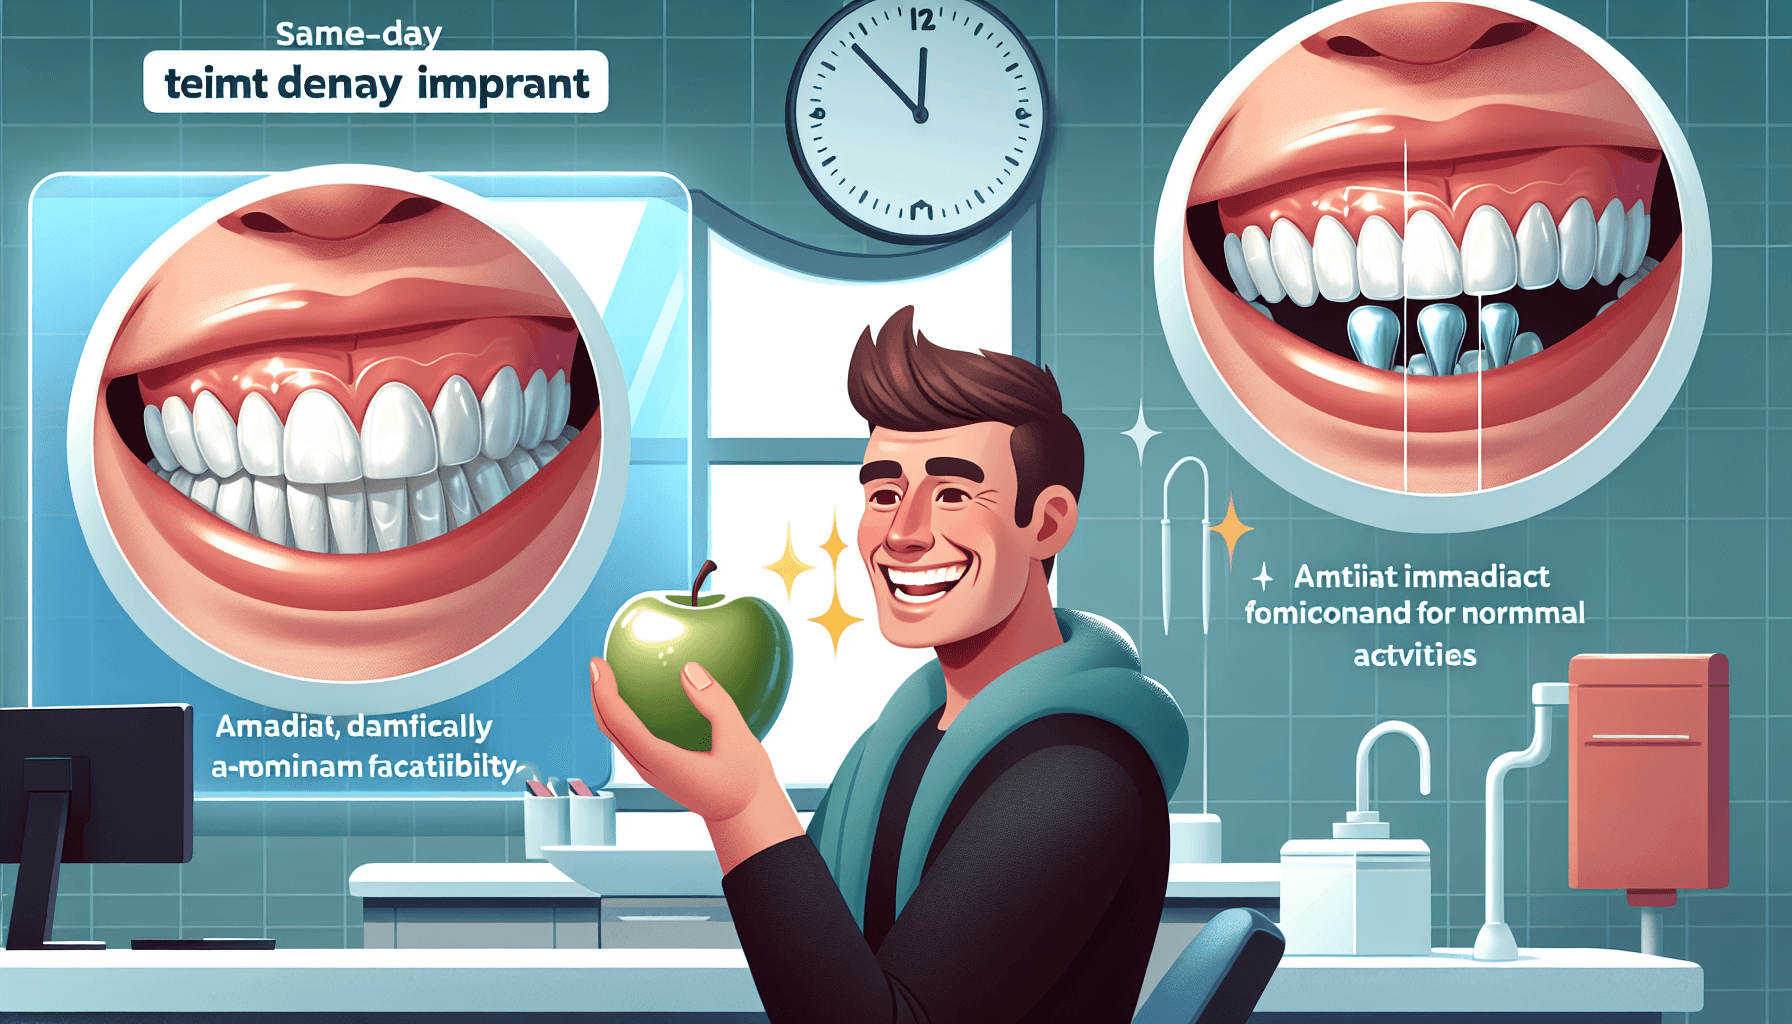 Illustration of advantages of same day dental implants